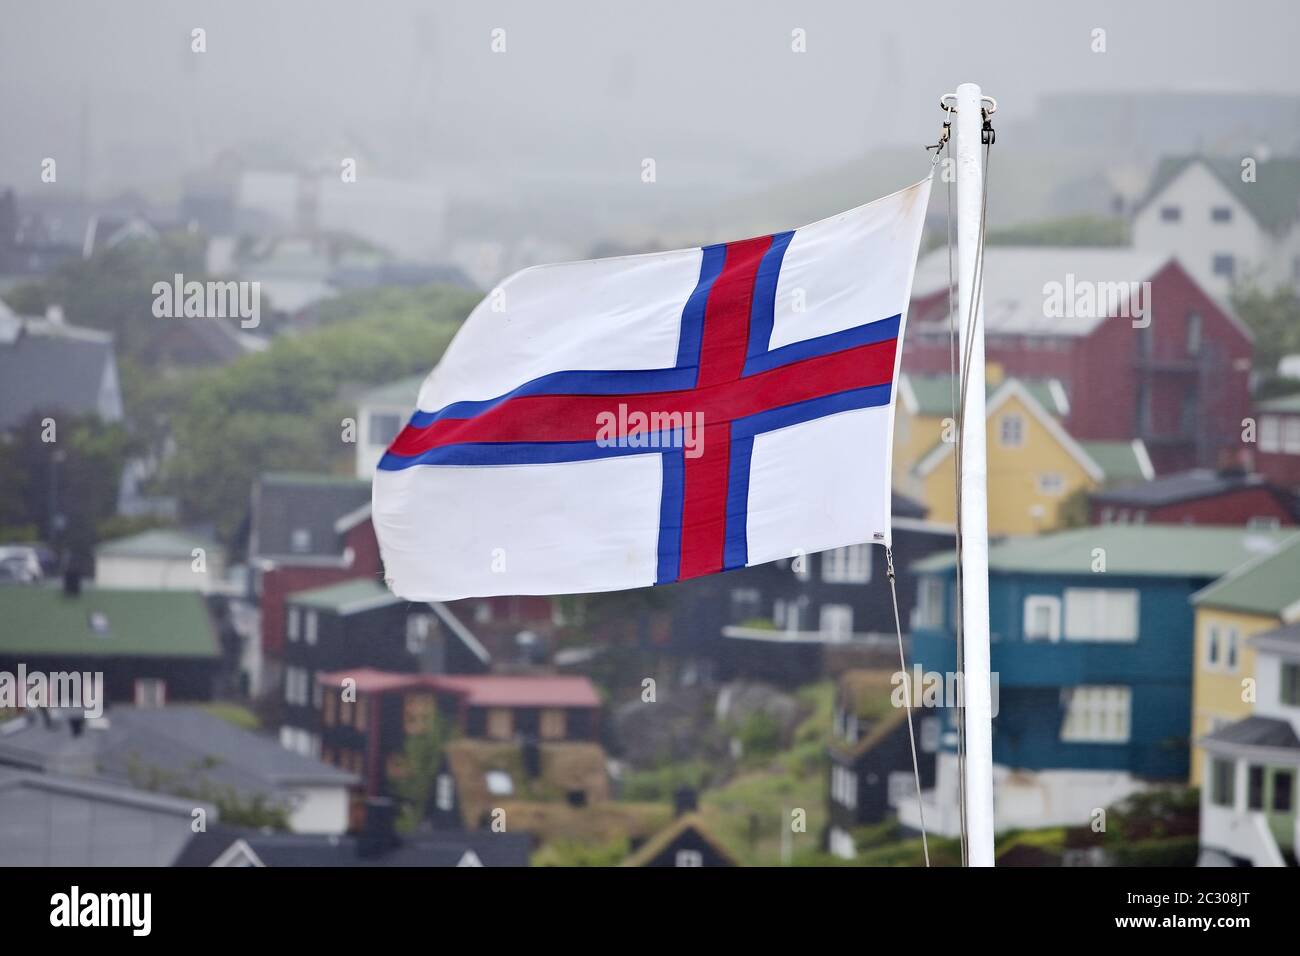 Flag of Faeroeer in front of houses in the fog, Thórshavn, Faeroeer, Føroyar, Denmark, Europe Stock Photo